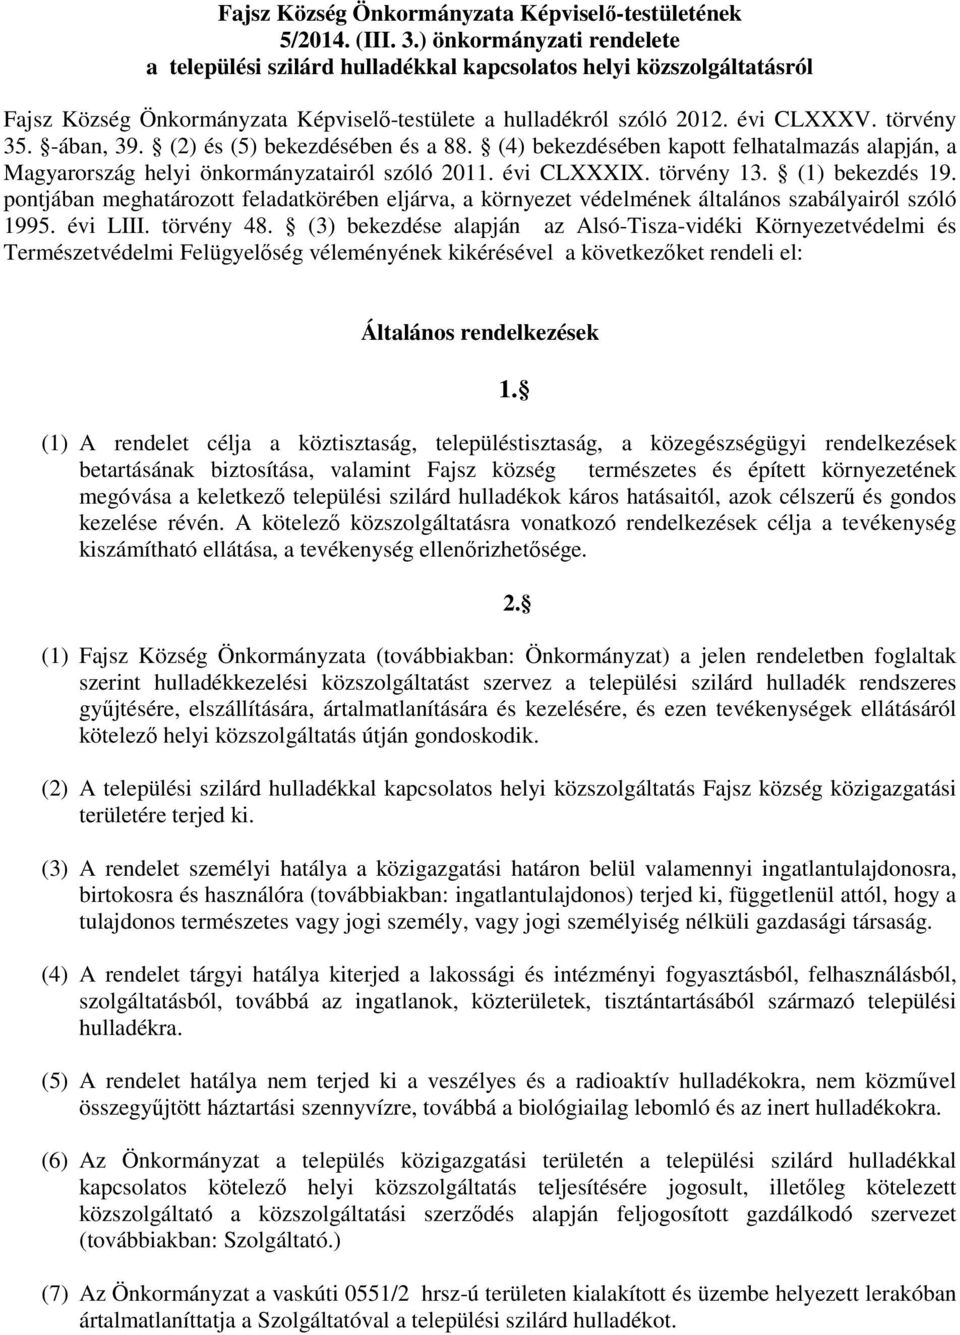 -ában, 39. (2) és (5) bekezdésében és a 88. (4) bekezdésében kapott felhatalmazás alapján, a Magyarország helyi önkormányzatairól szóló 2011. évi CLXXXIX. törvény 13. (1) bekezdés 19.